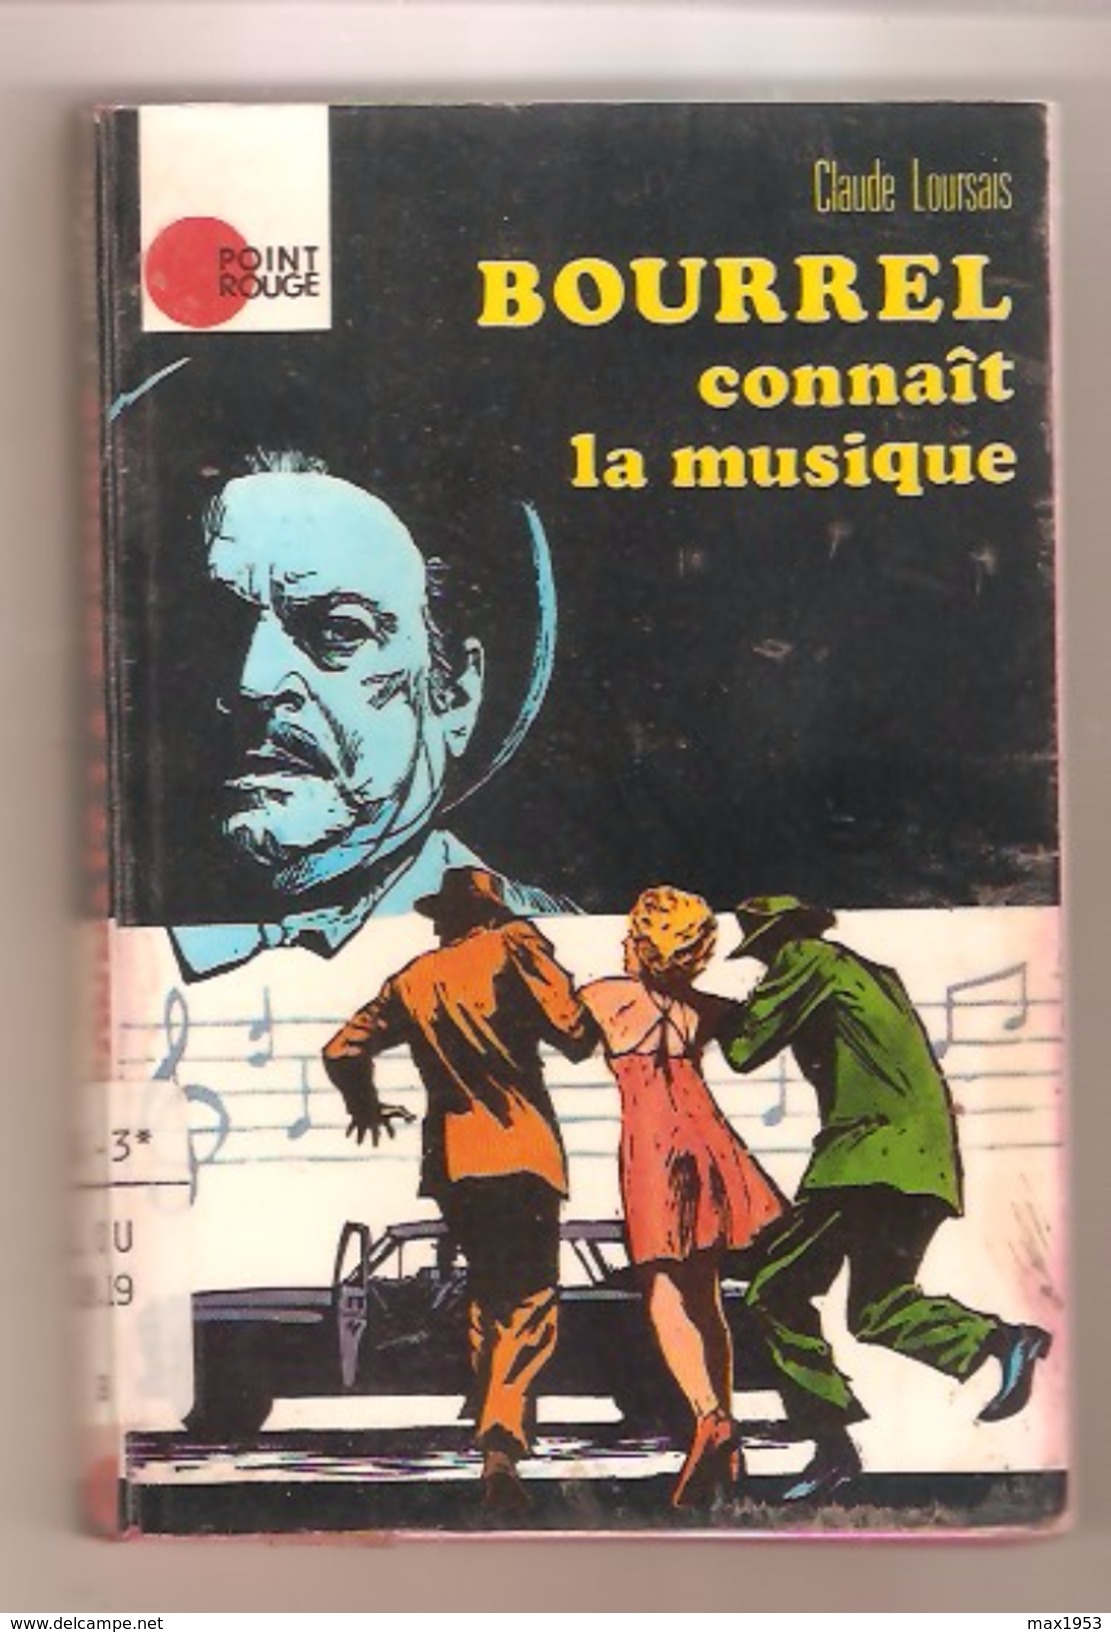 Claude Loursais- BOURREL Connaît La Musique - Collection: Point Rouge N° 8 - 1972 - Hachette - Point Rouge